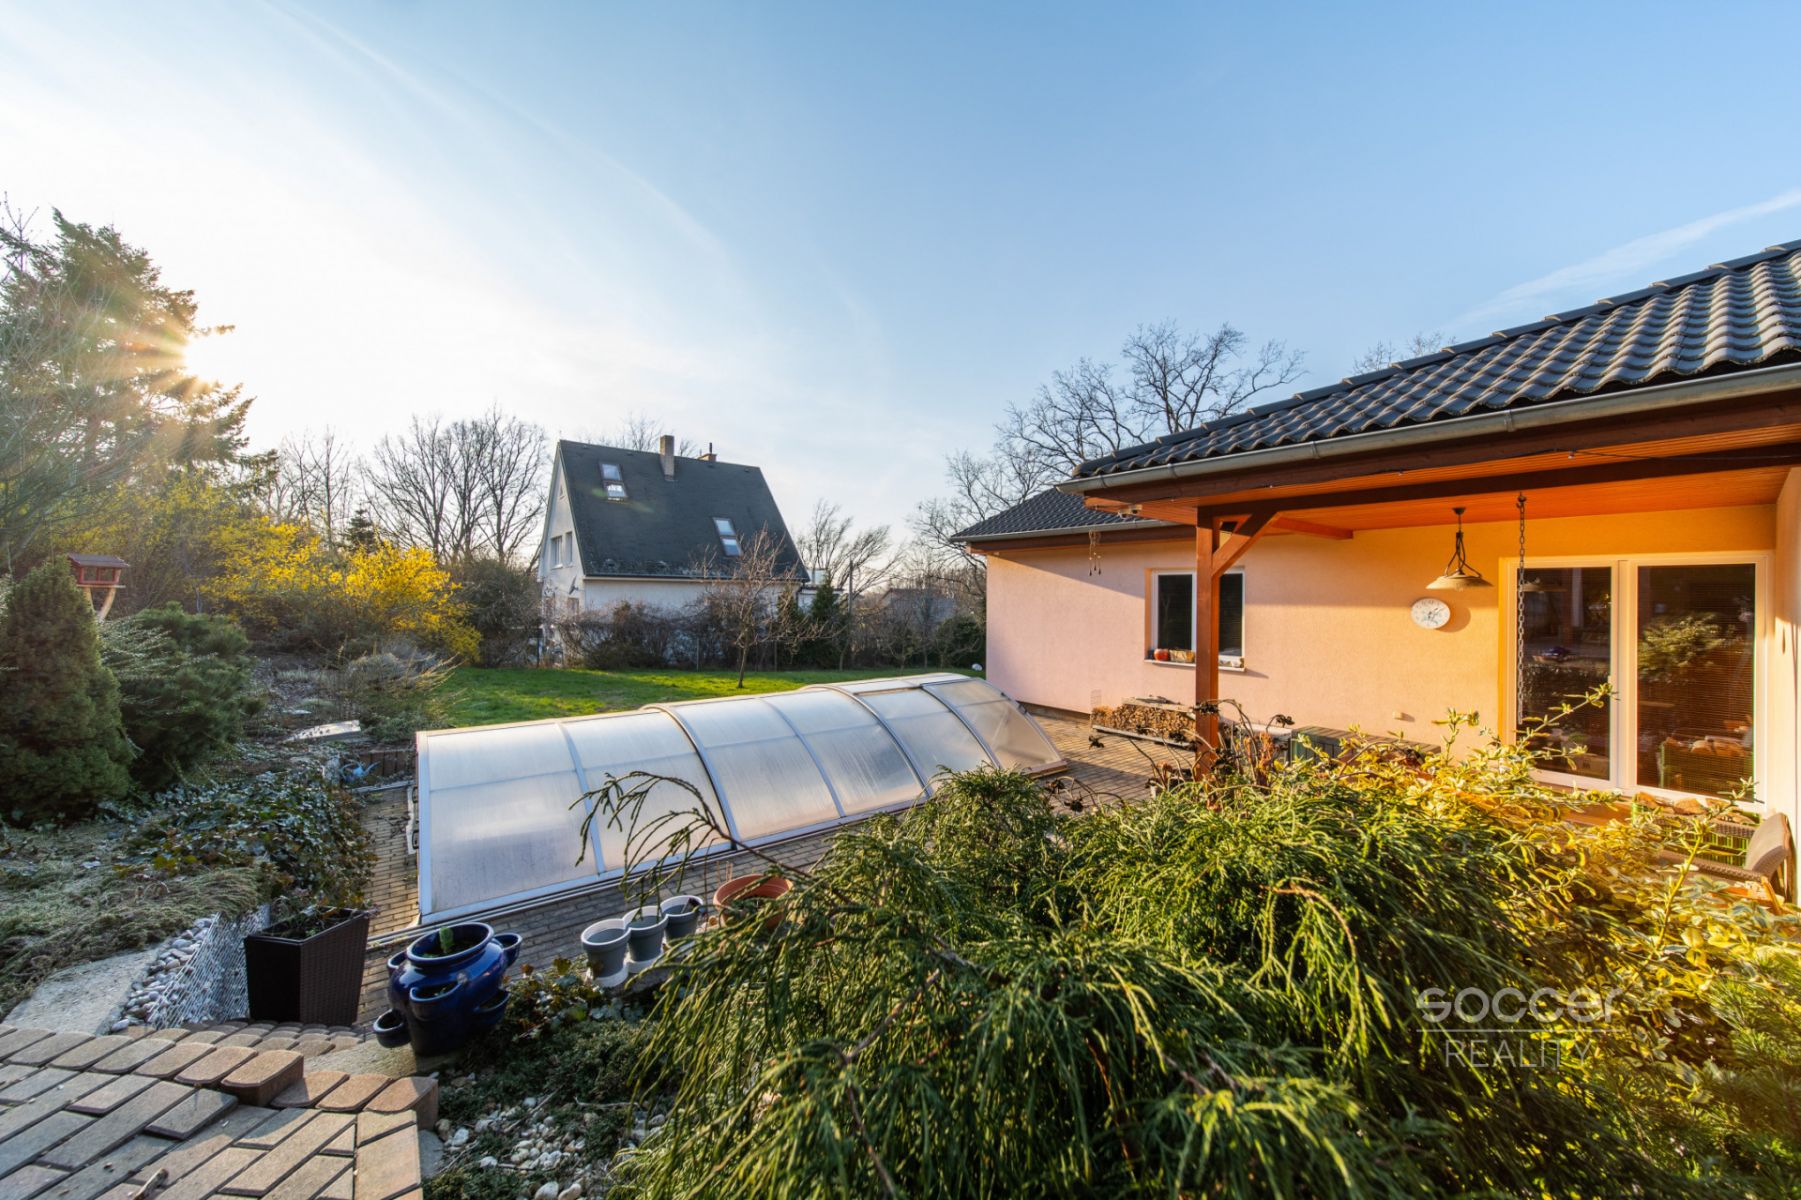 Prodej rodinného domu se zahradou, garáží, bazénem nedaleko Prahy, obec Strančice, Všechromy., obrázek č. 2